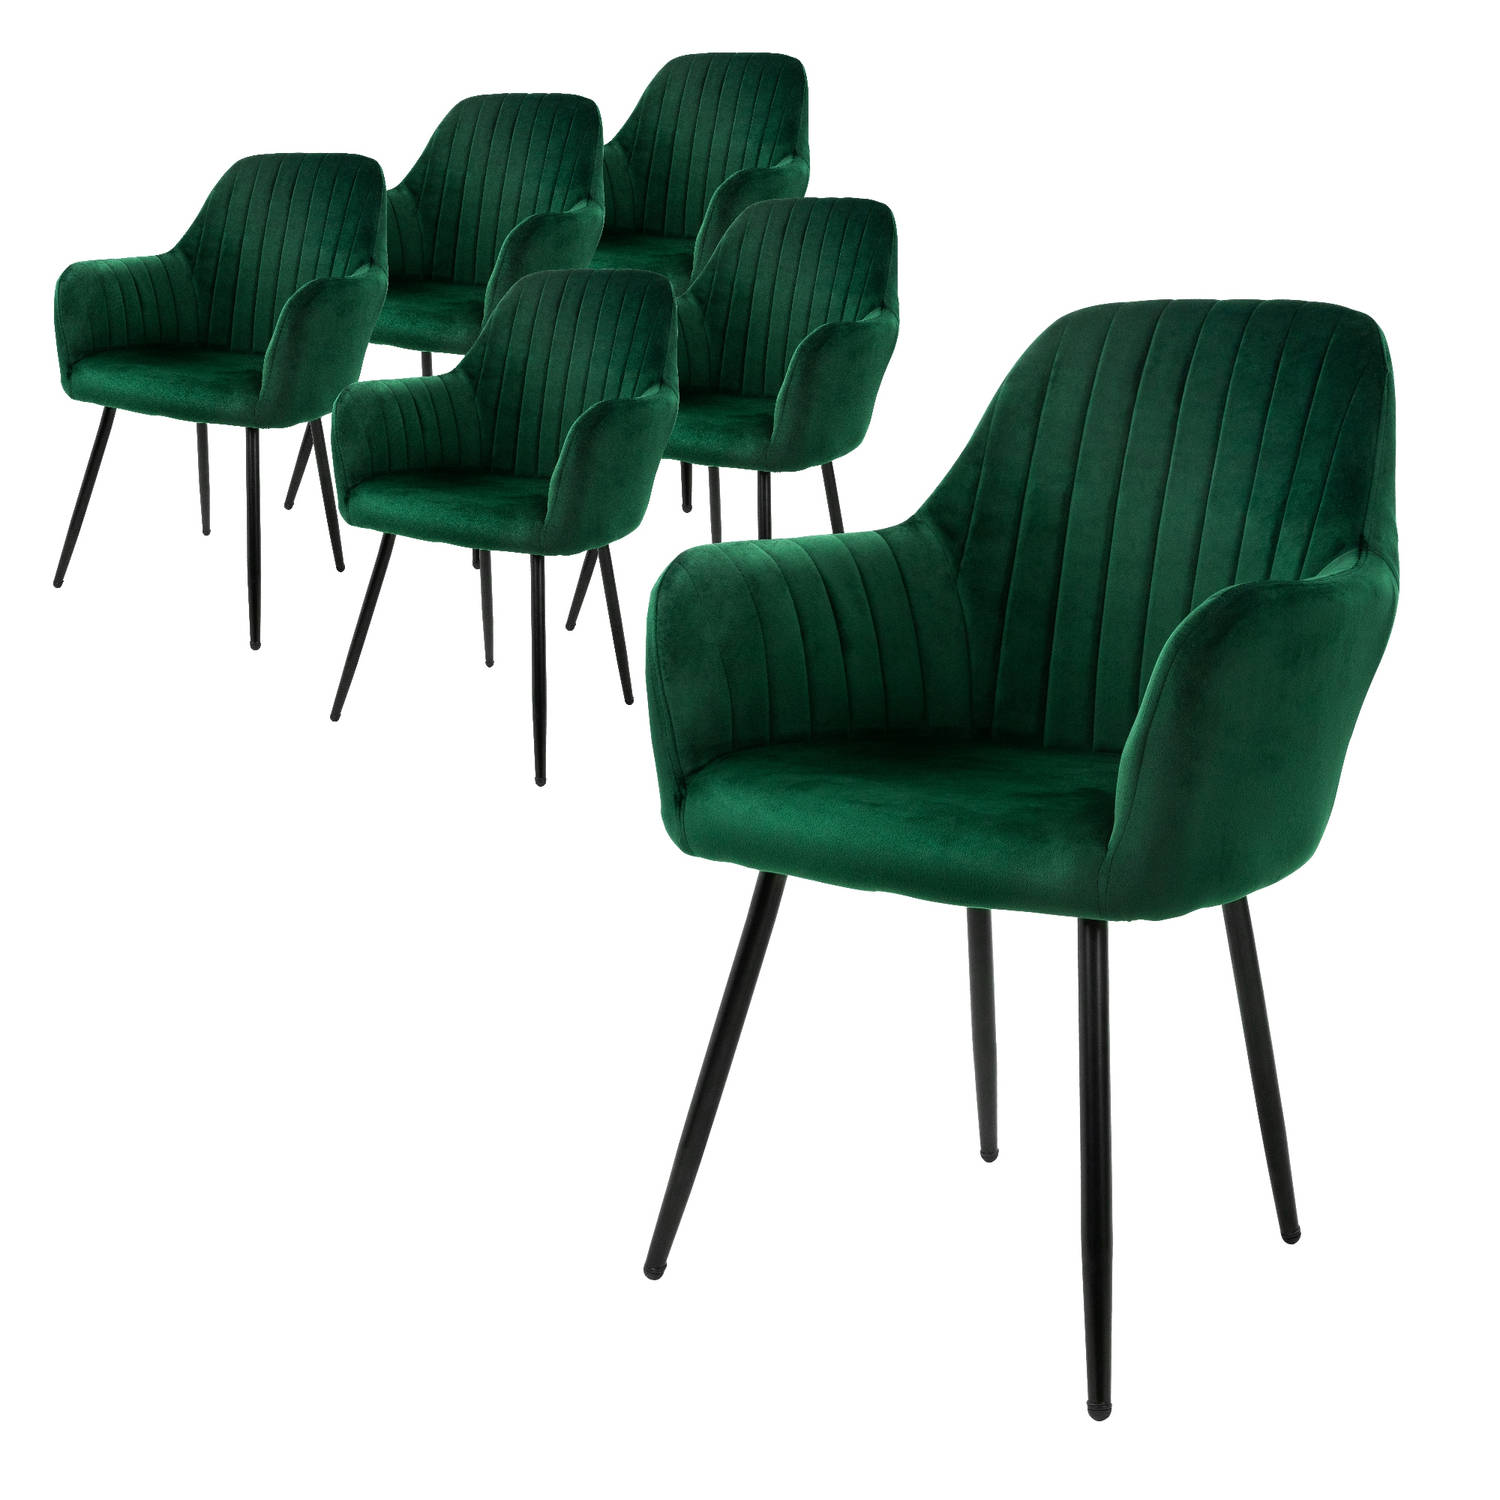 ML-Design set van 6 eetkamerstoelen met rugleuning en armleuningen, groen, keukenstoelen met fluwelen bekleding, gestoffeerde stoelen met metalen poten, ergonomische stoelen voor e